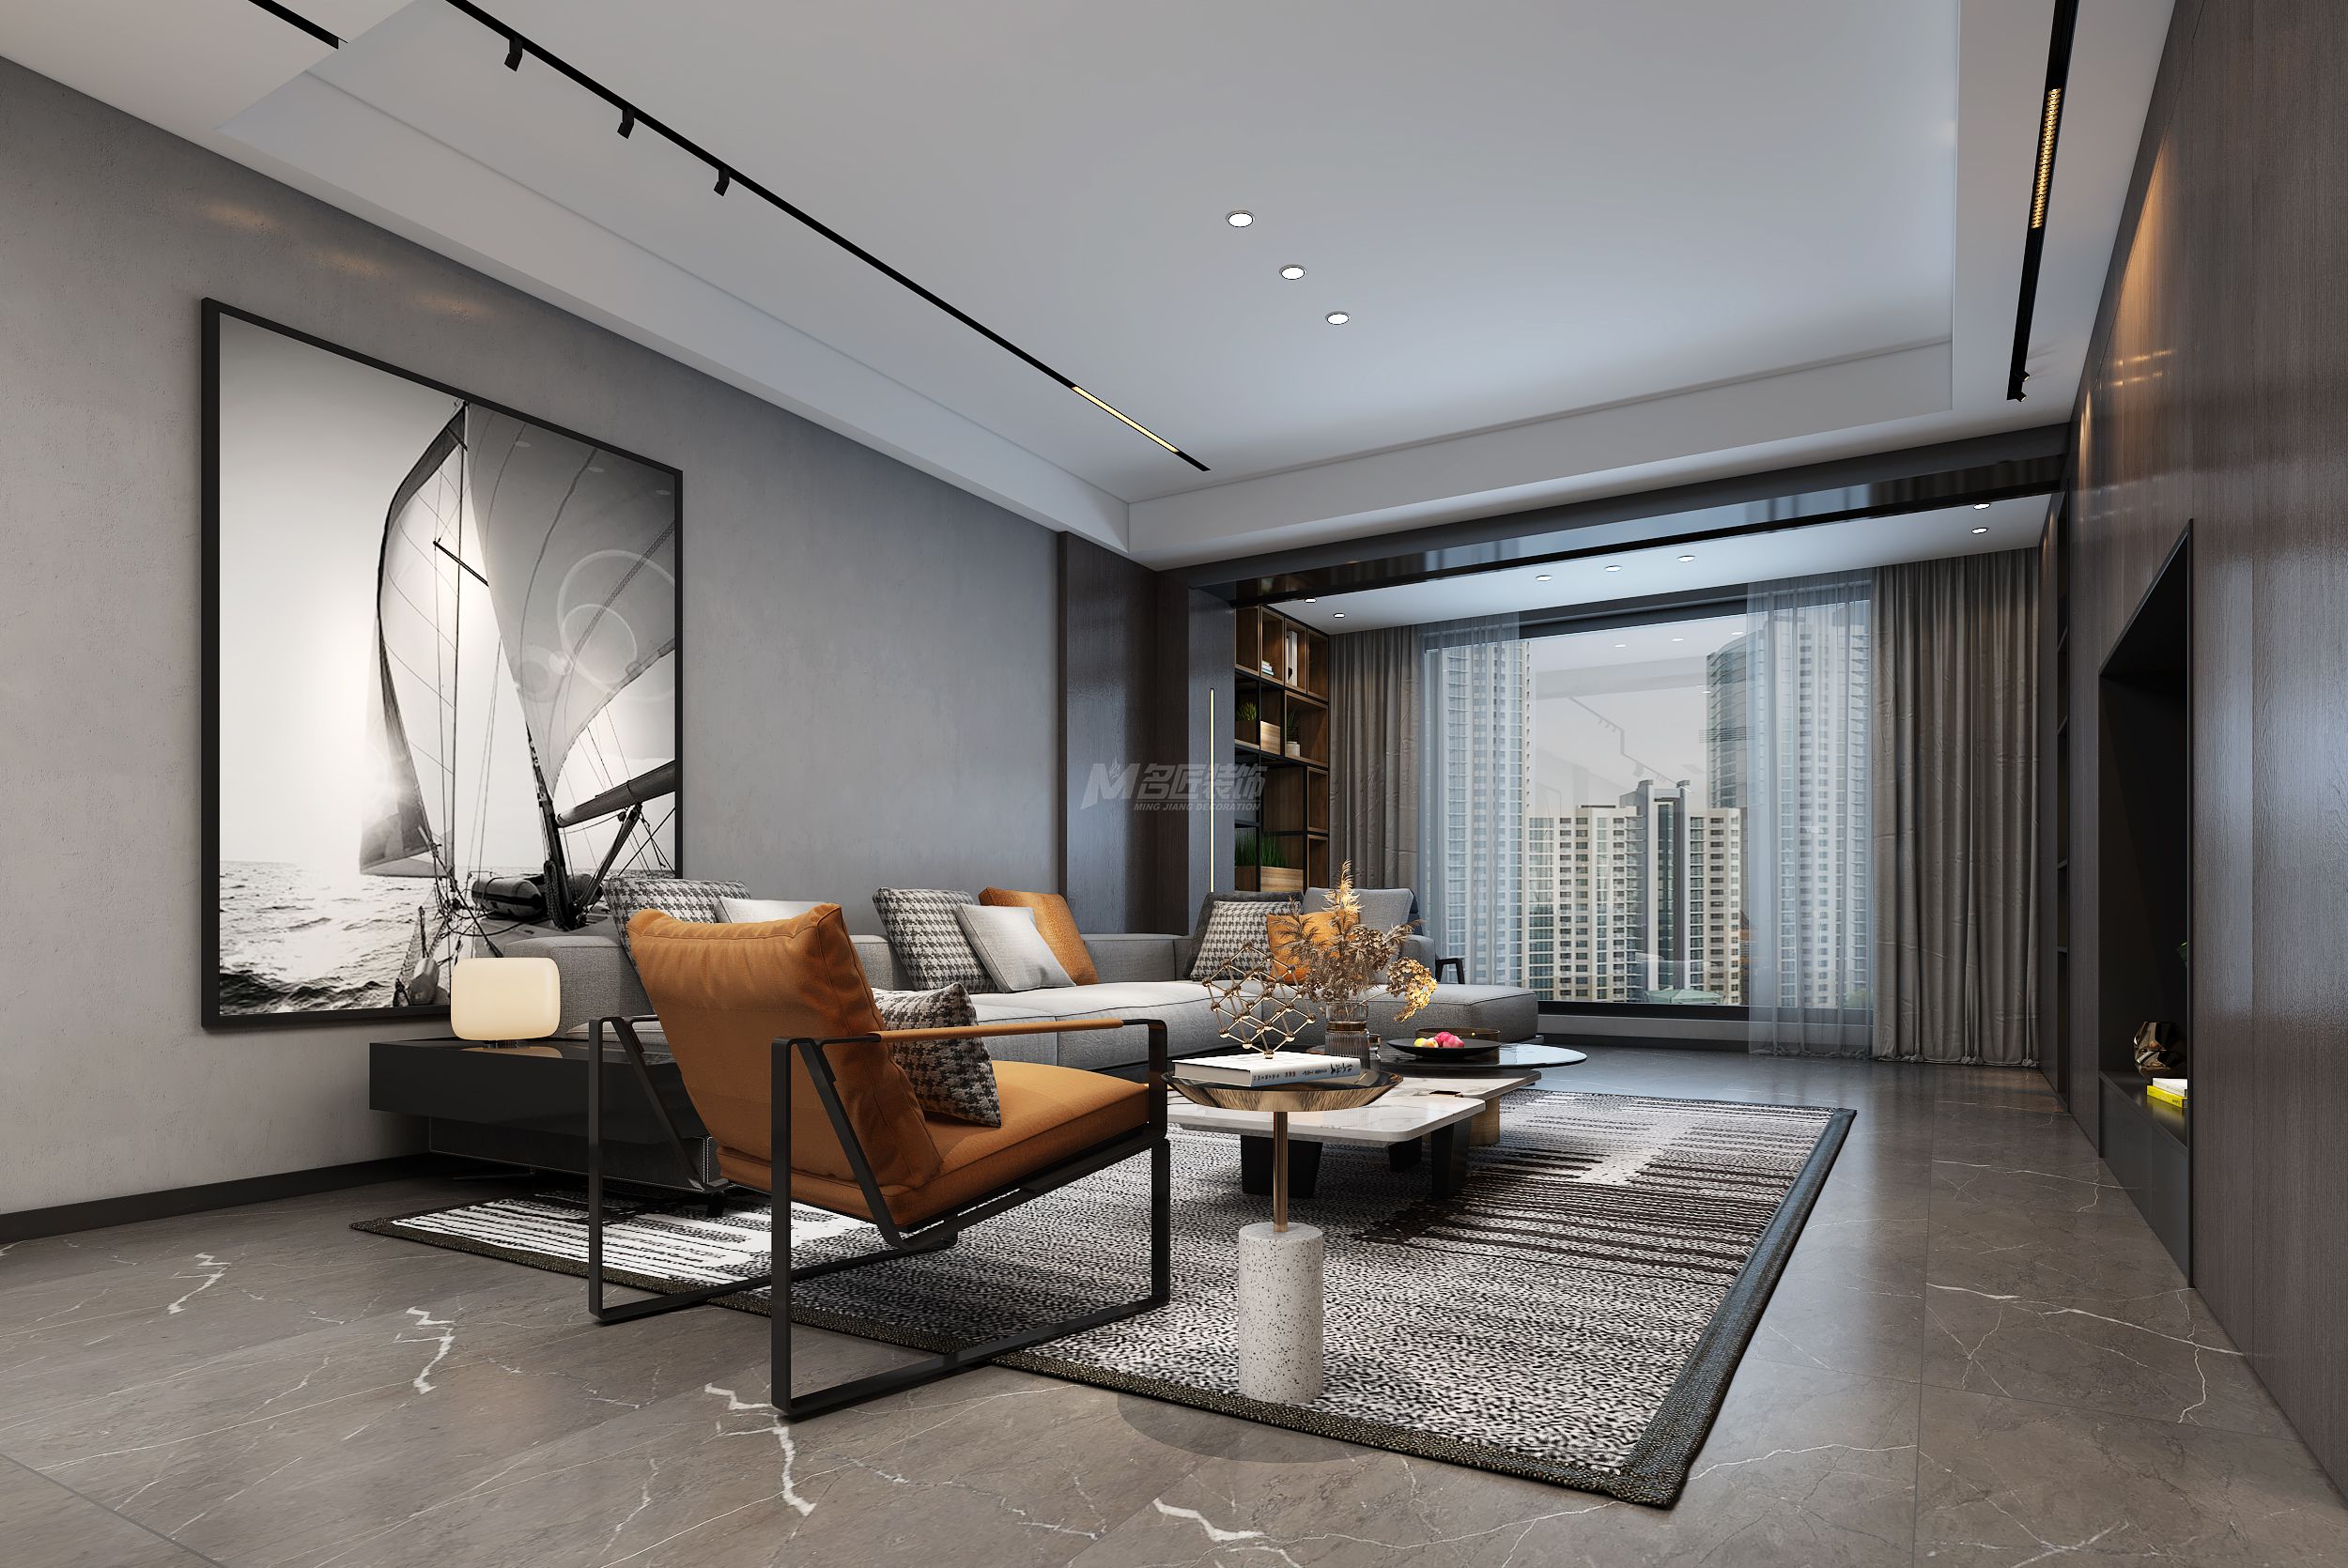 江山麗園160㎡客廳現代灰色極簡裝修風格效果圖